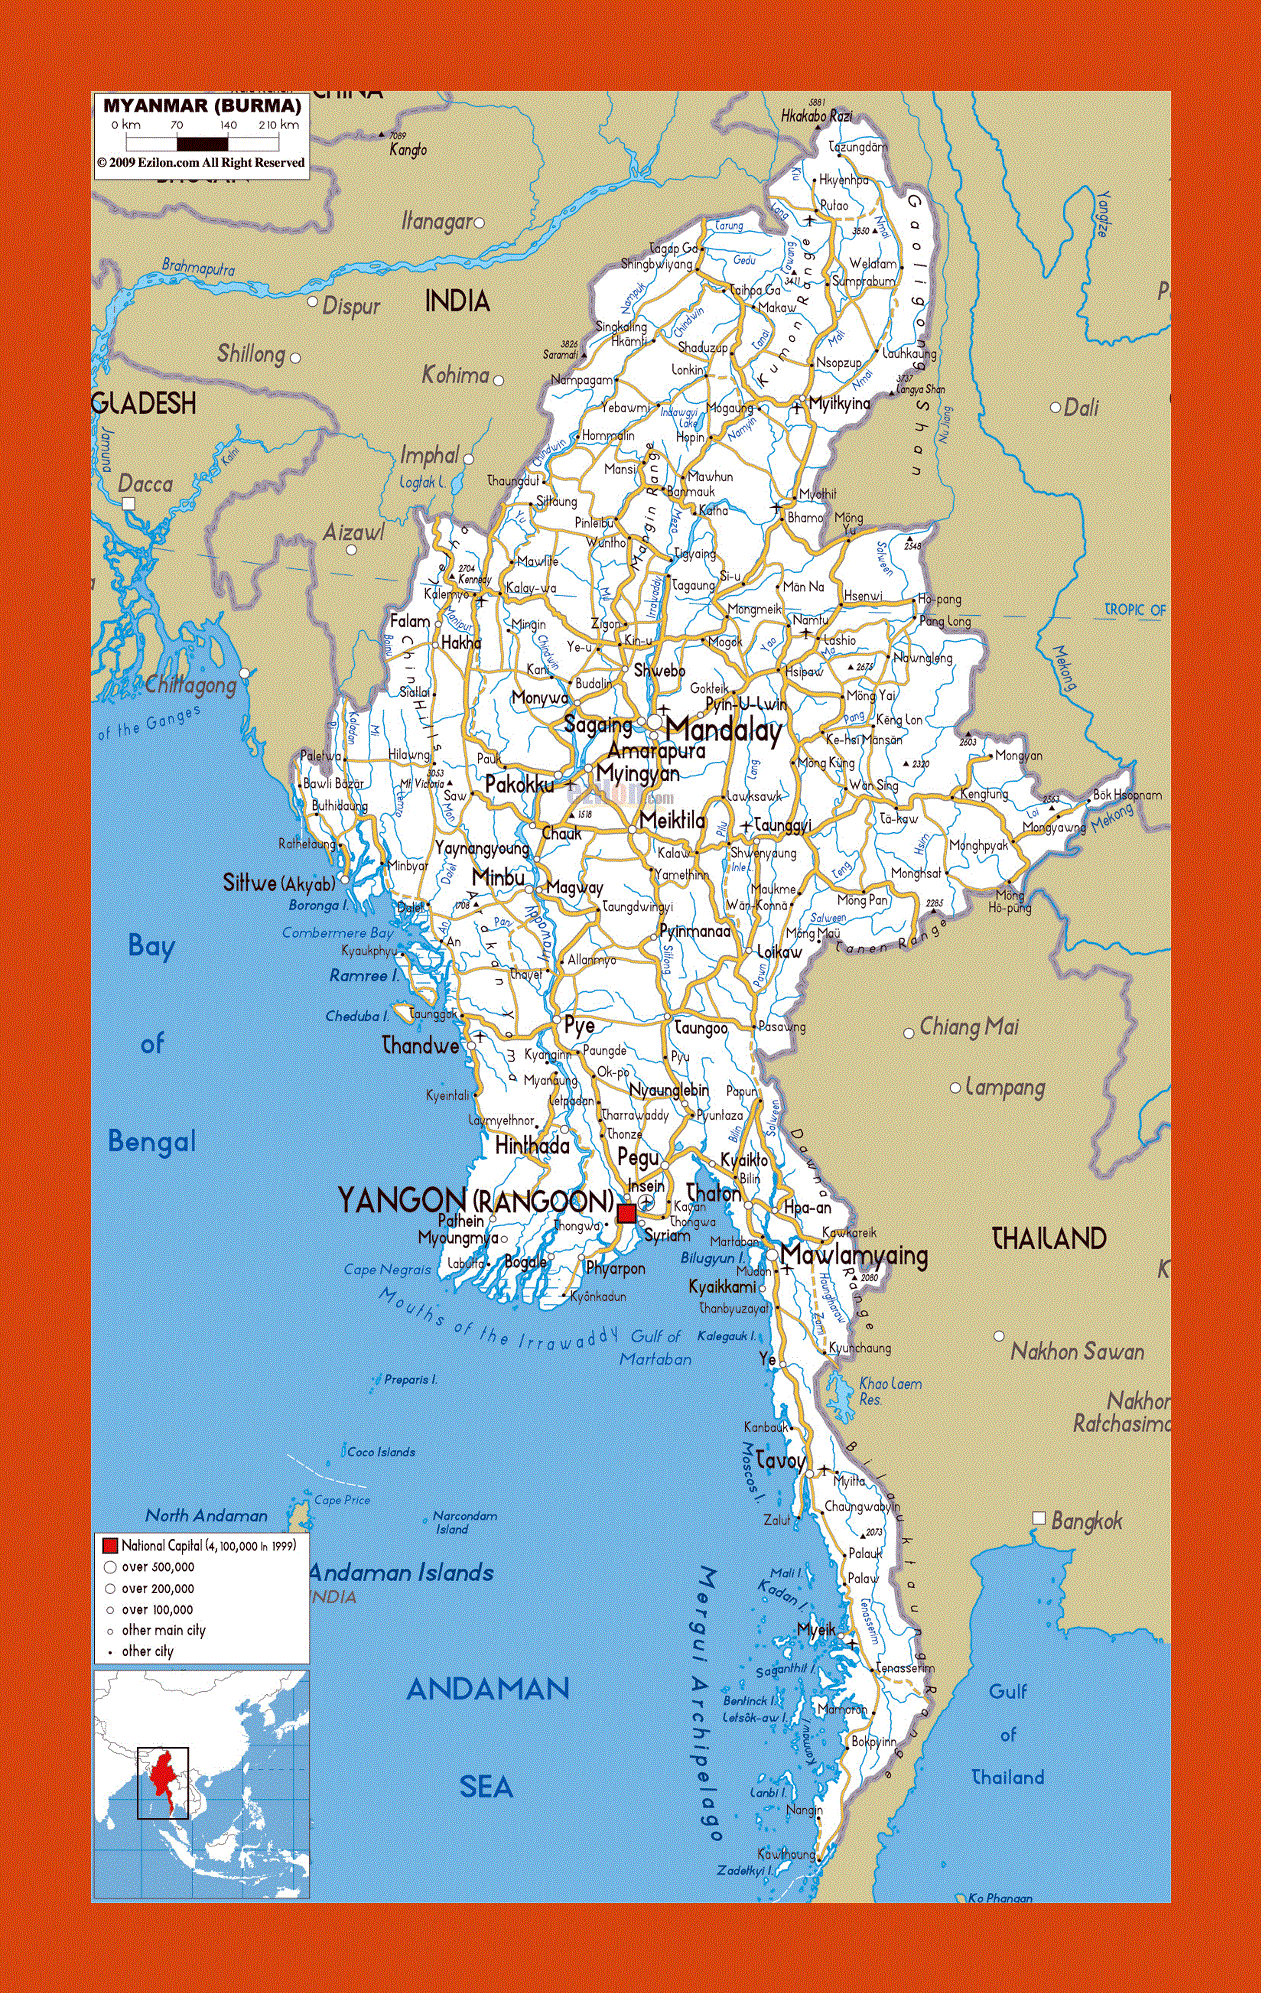 Road map of Myanmar